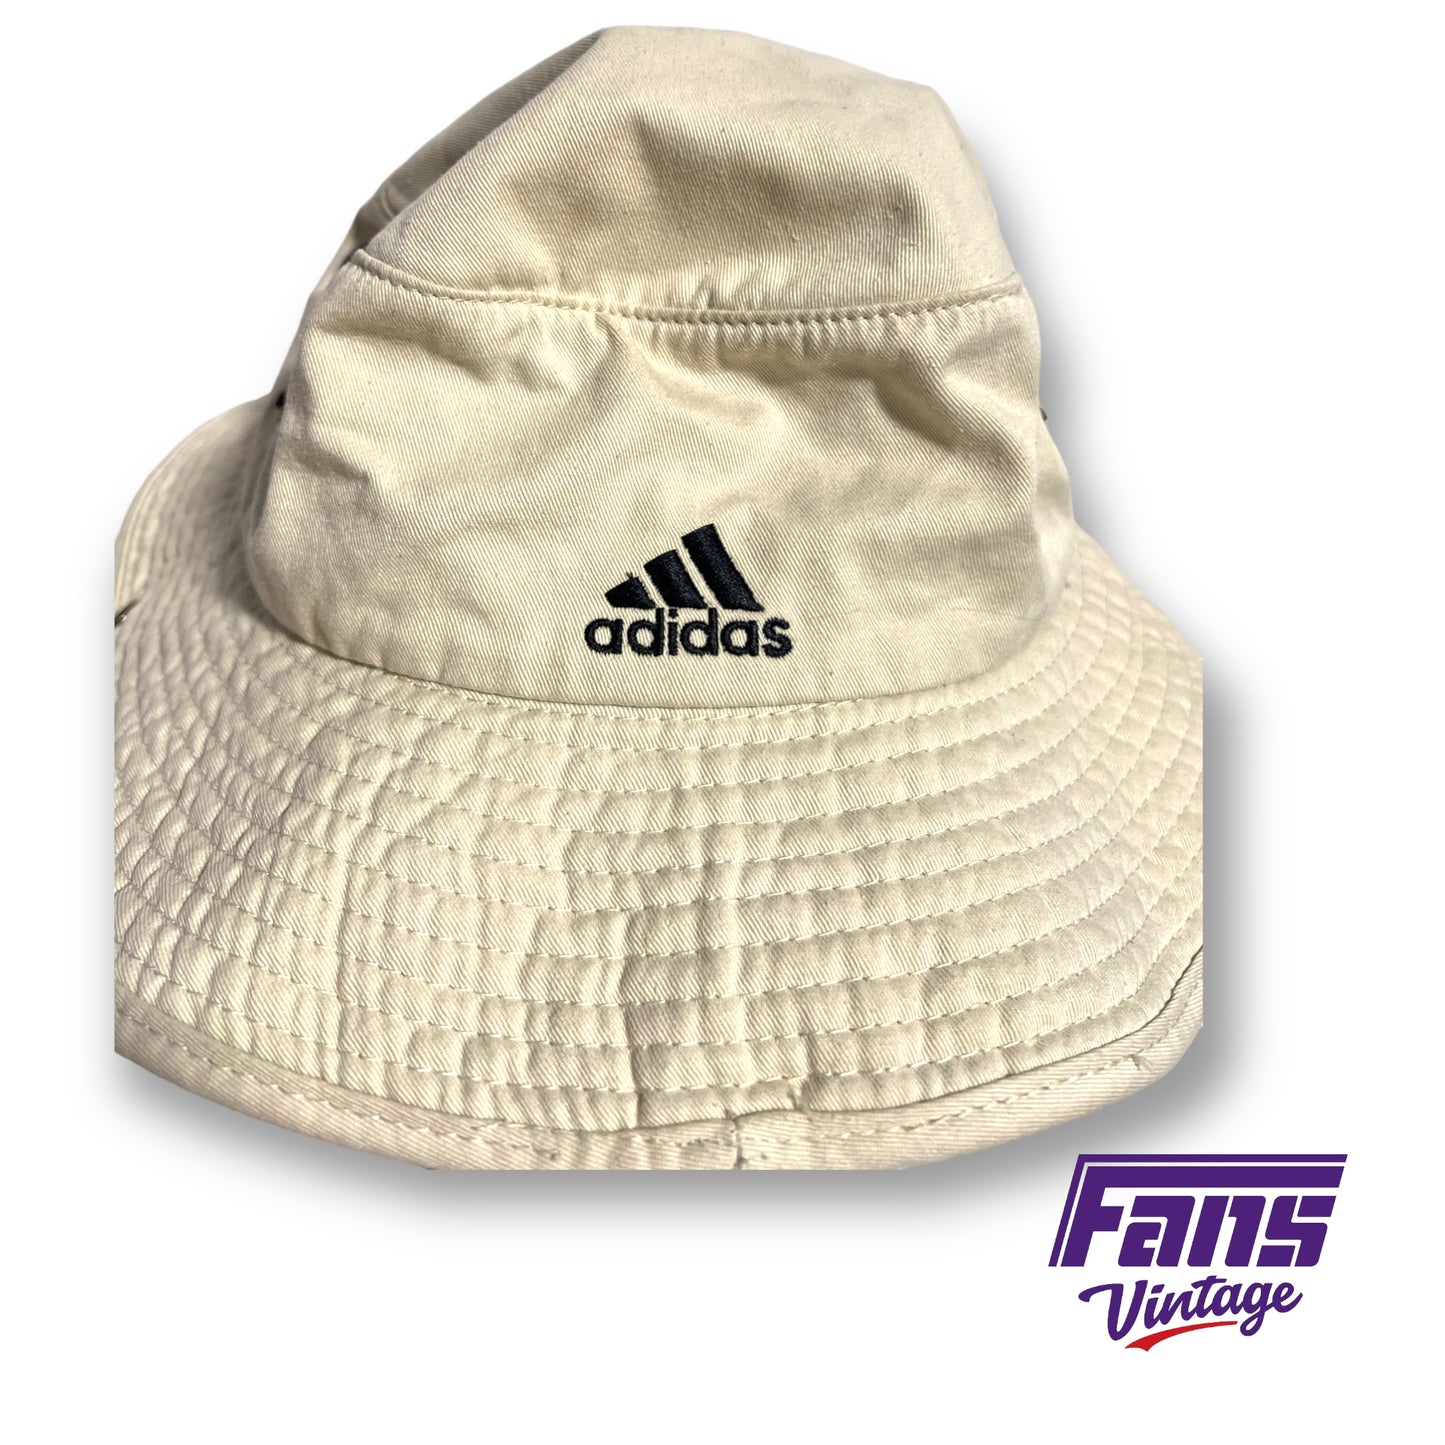 Adidas College World Series bucket hat